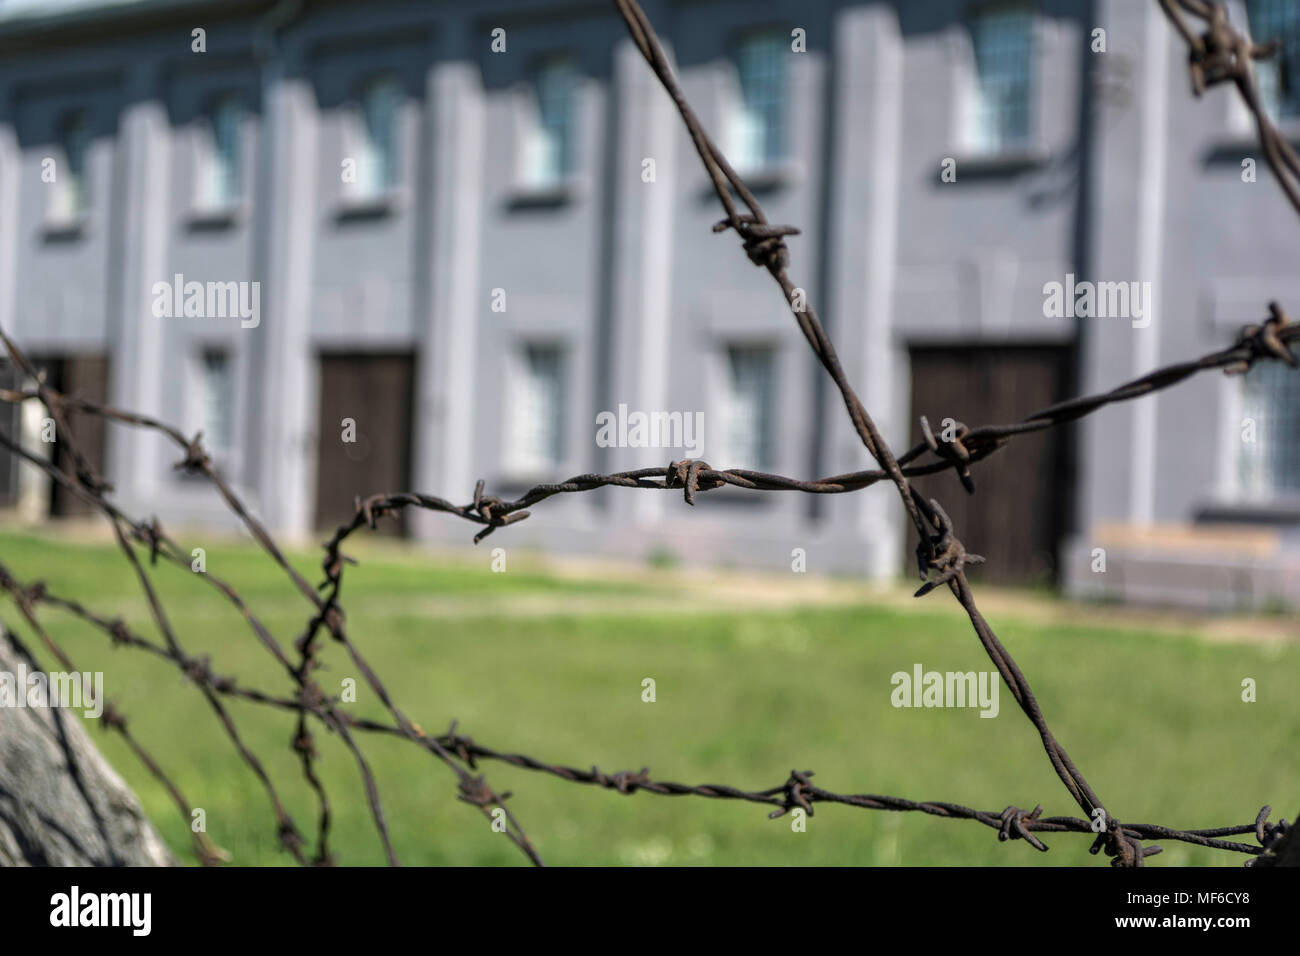 NIS, Serbie - 21 avril 2018 : du fil de fer barbelé et floue des capacités en camp de concentration, selective focus, Close up Banque D'Images